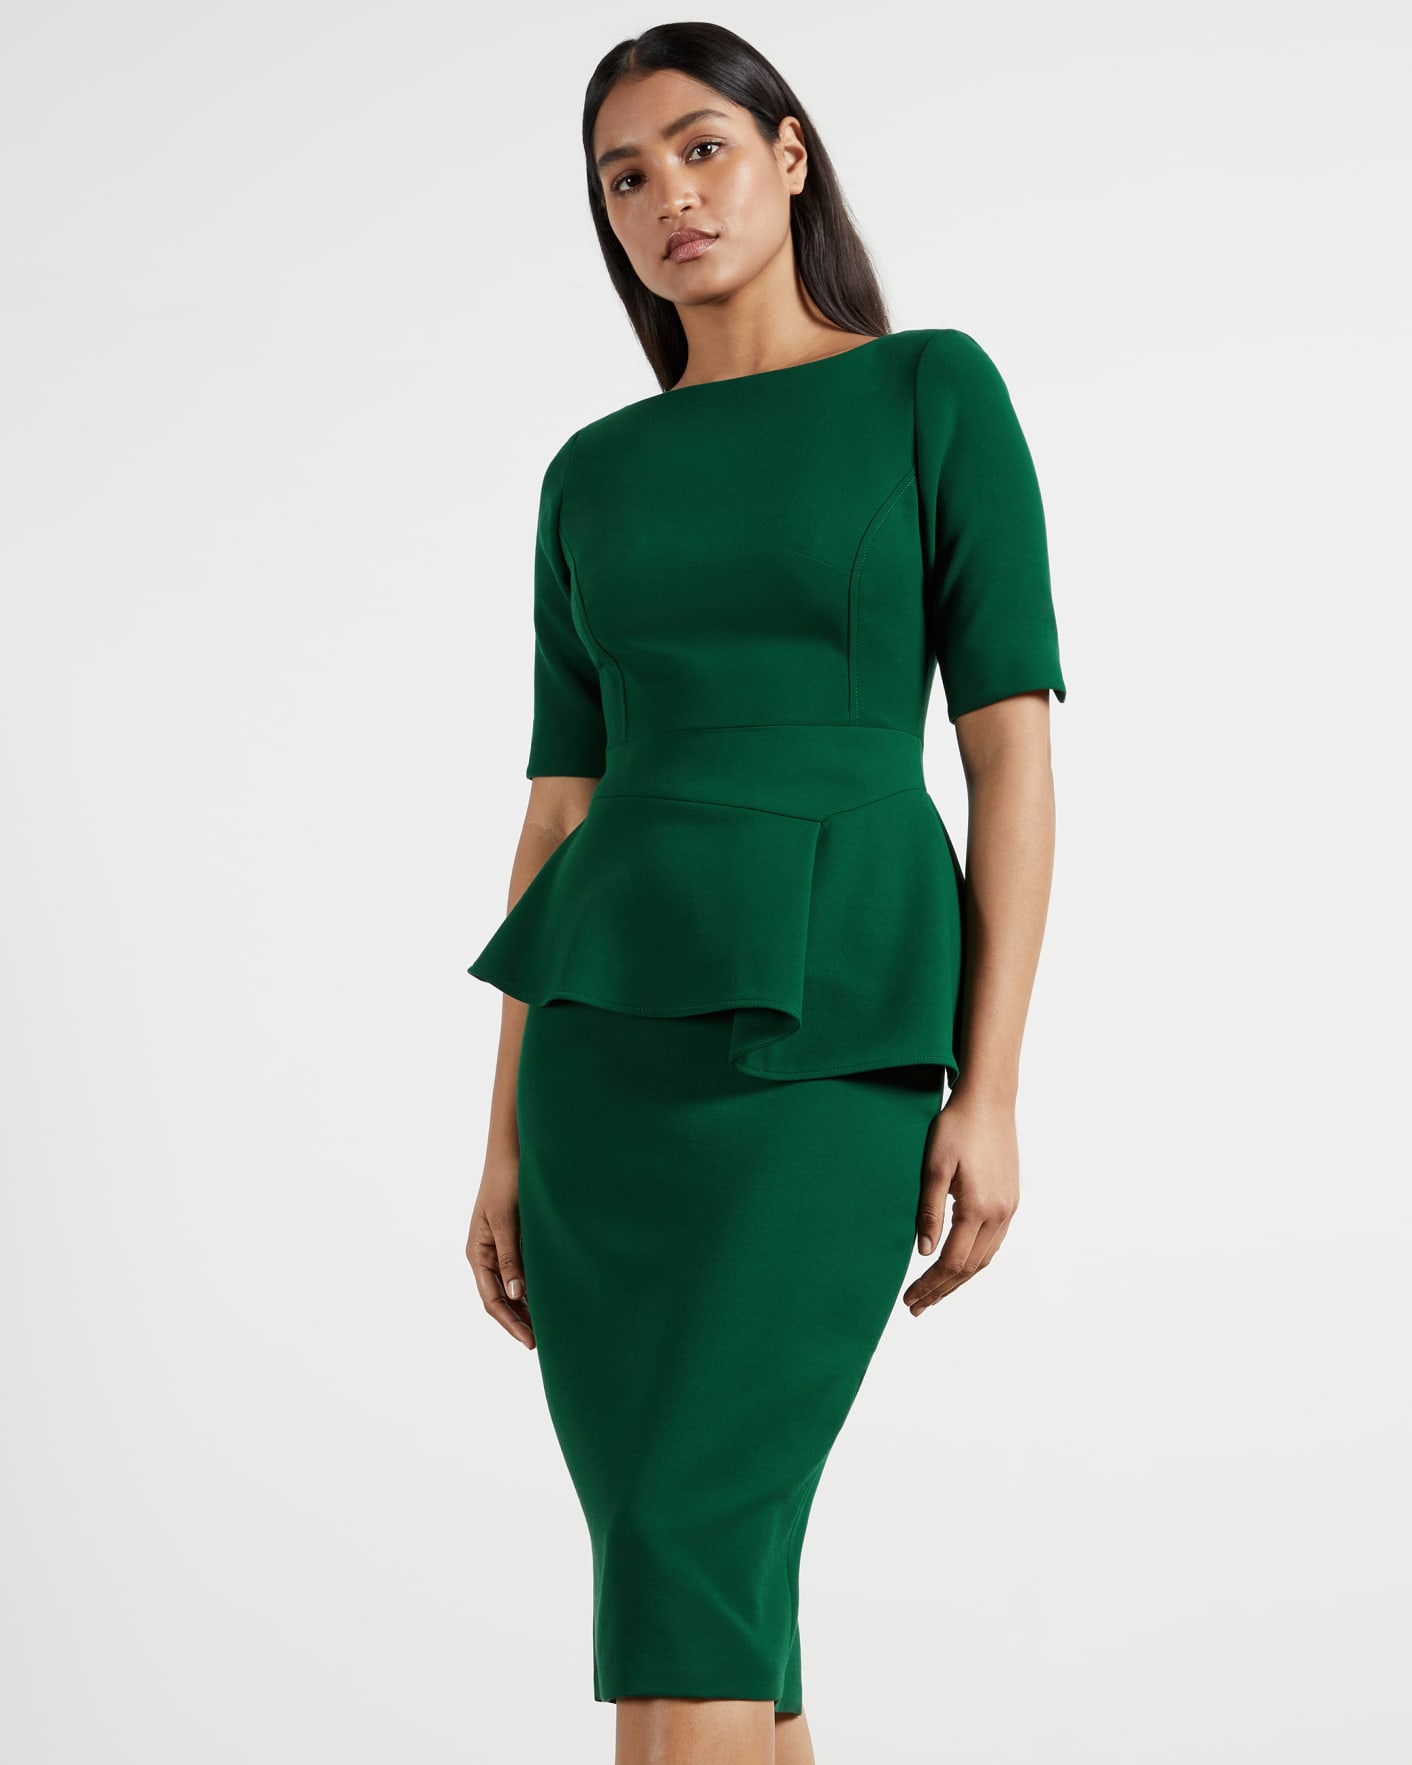 Dark Green Peplum Detail Short Sleeve Dress Ted Baker